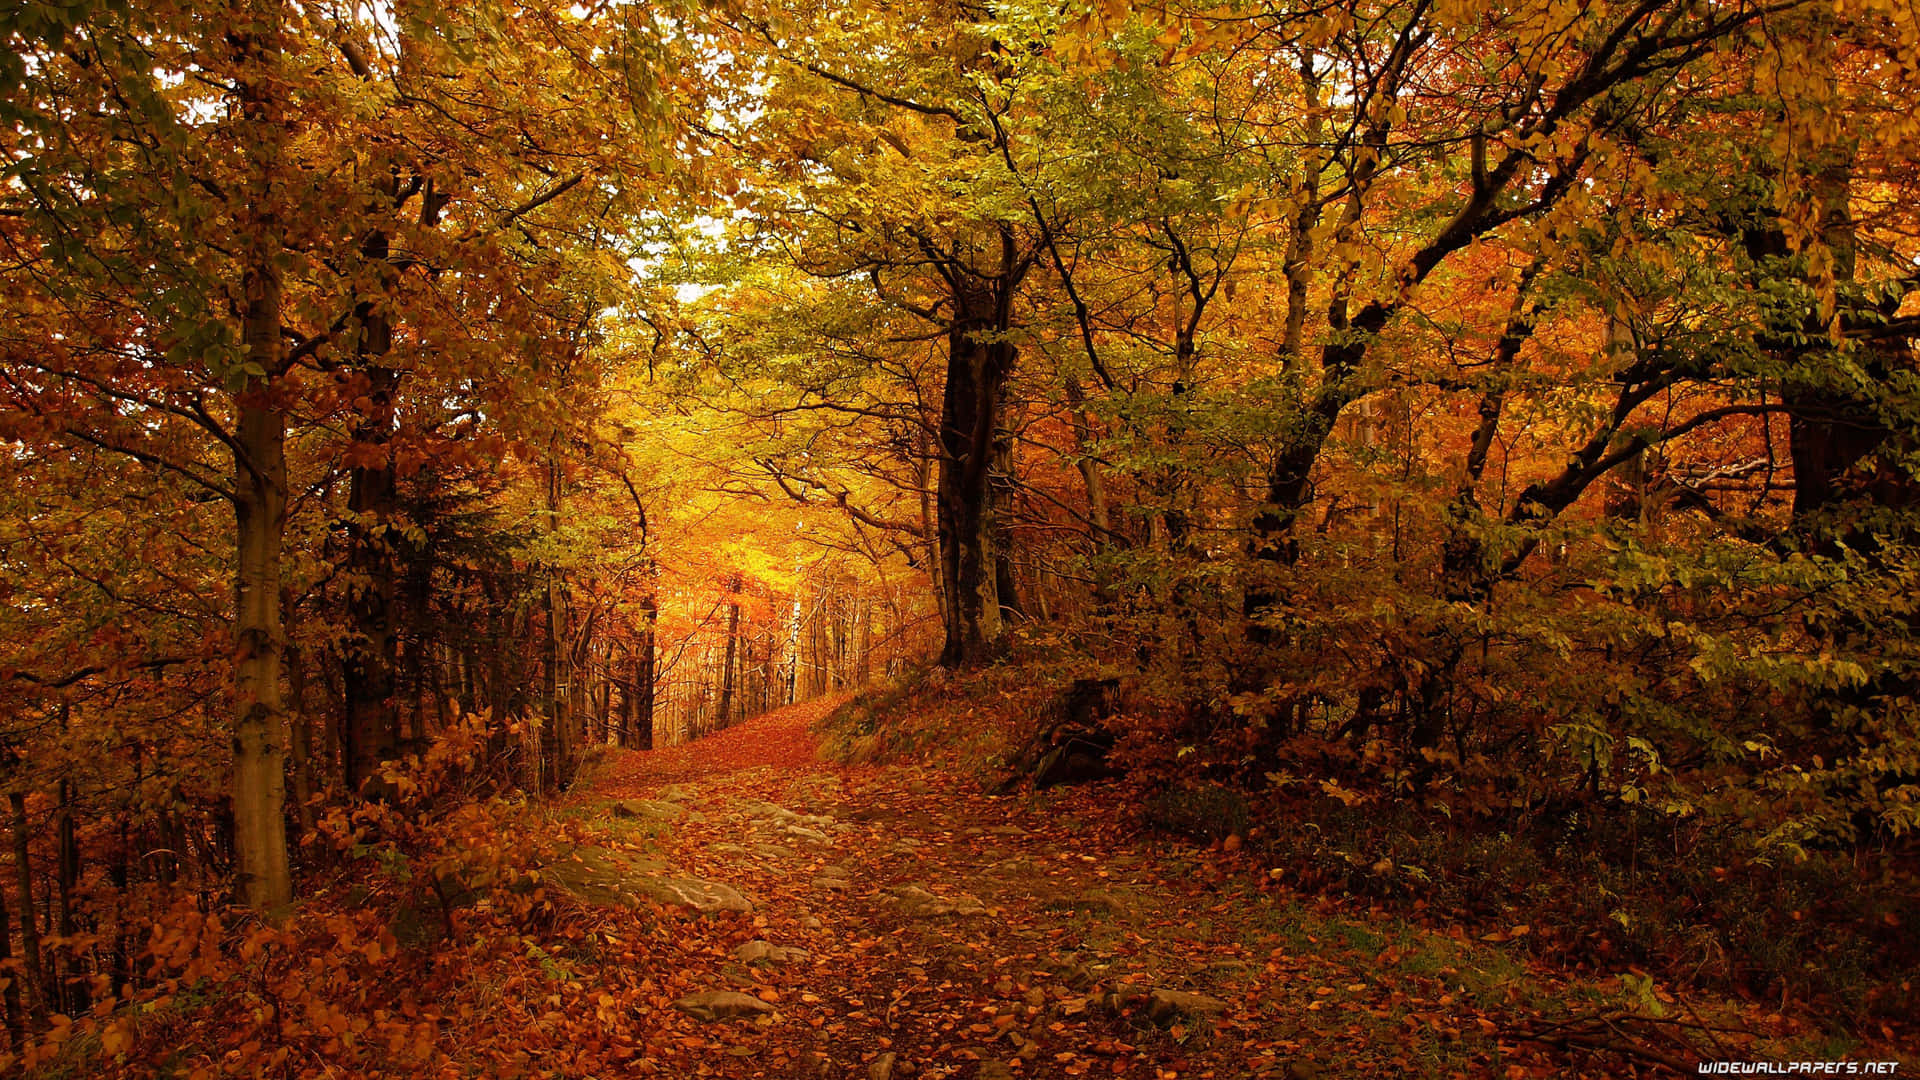 Njutav Höstens Skönhet Med En 3840 X 2160 Bild Som Bakgrundsbild För Din Dator Eller Mobiltelefon. Wallpaper